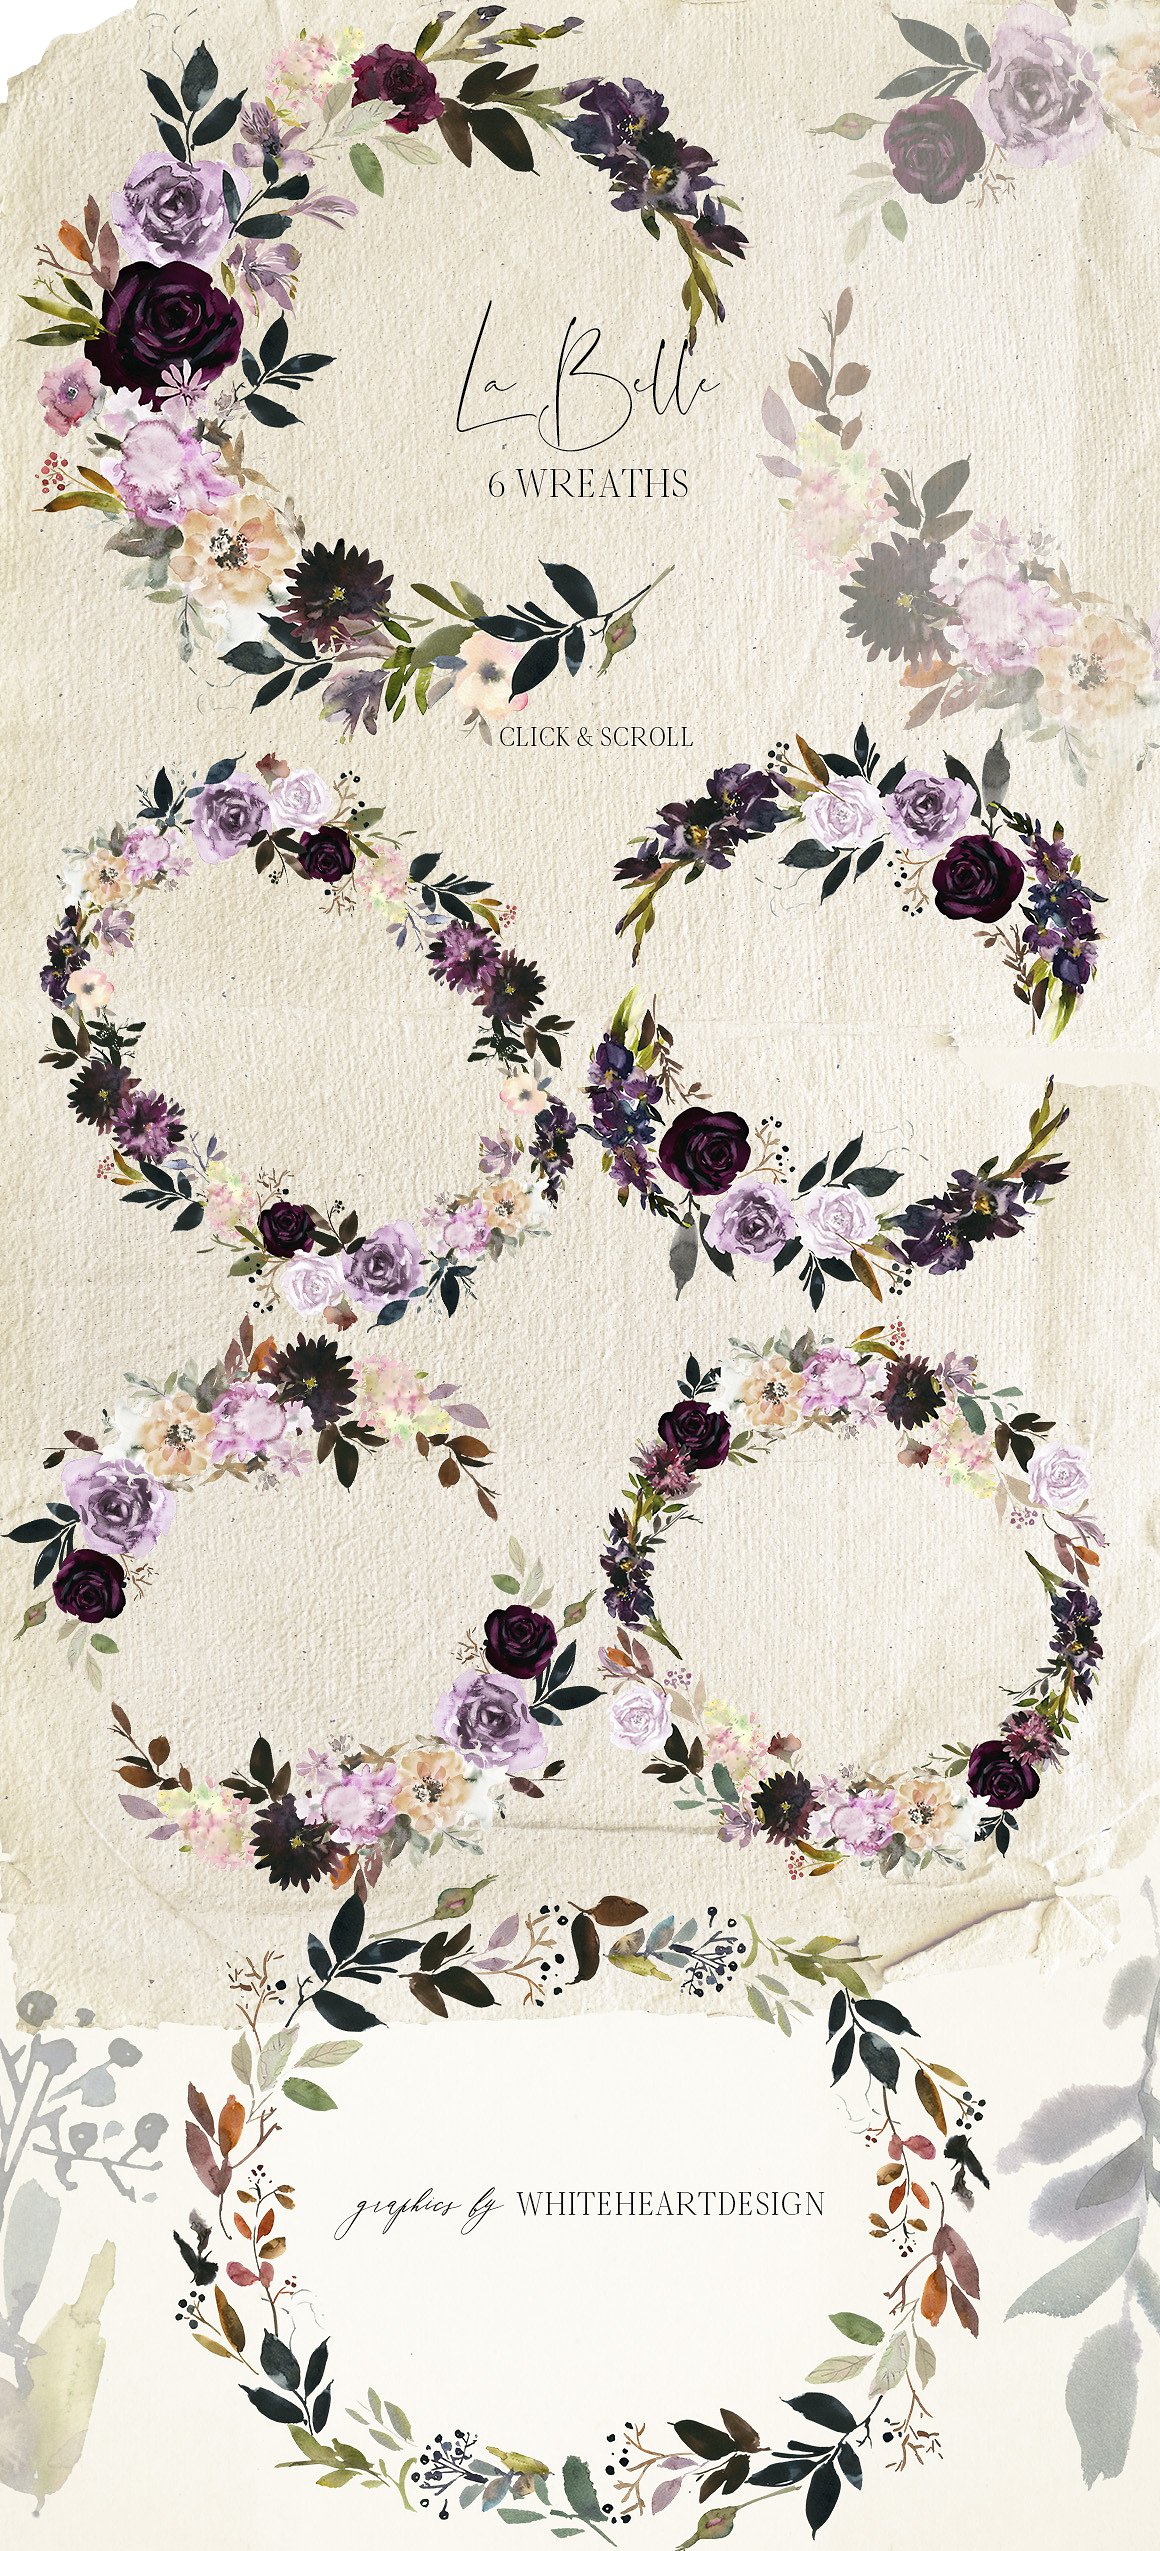 魅力水彩花卉剪贴画 La Belle Watercolor Floral Clipart插图4